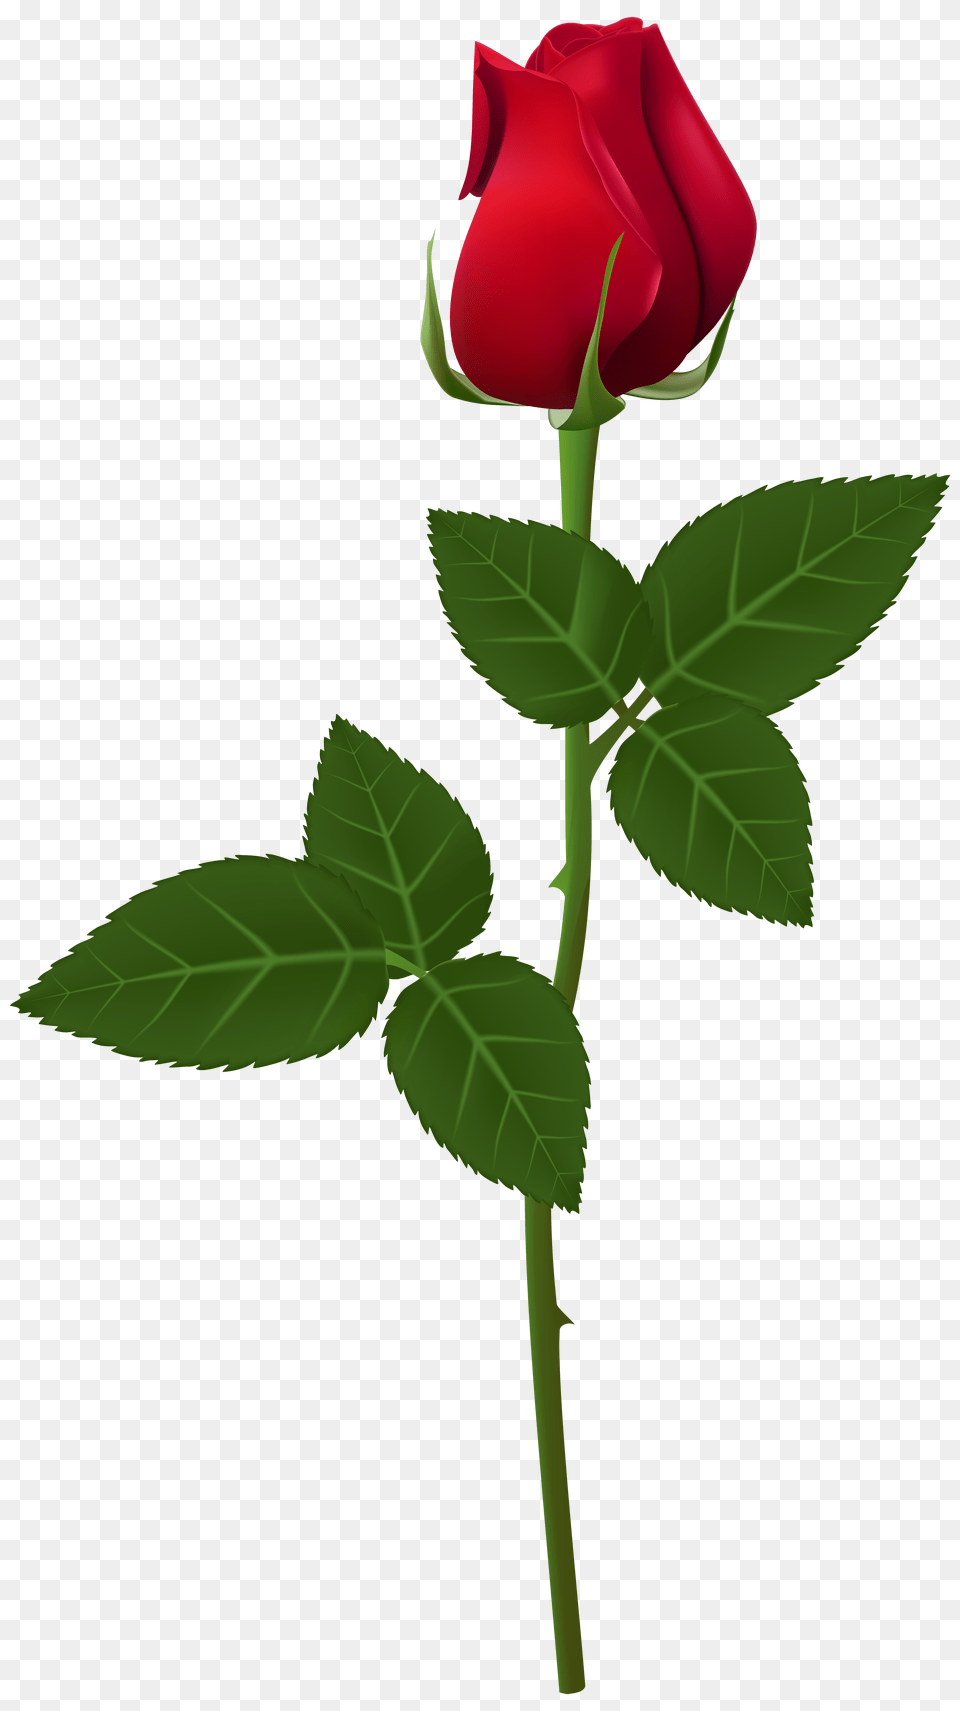 Rose Flower Images Background Rose, Plant, Cross, Symbol Free Transparent Png